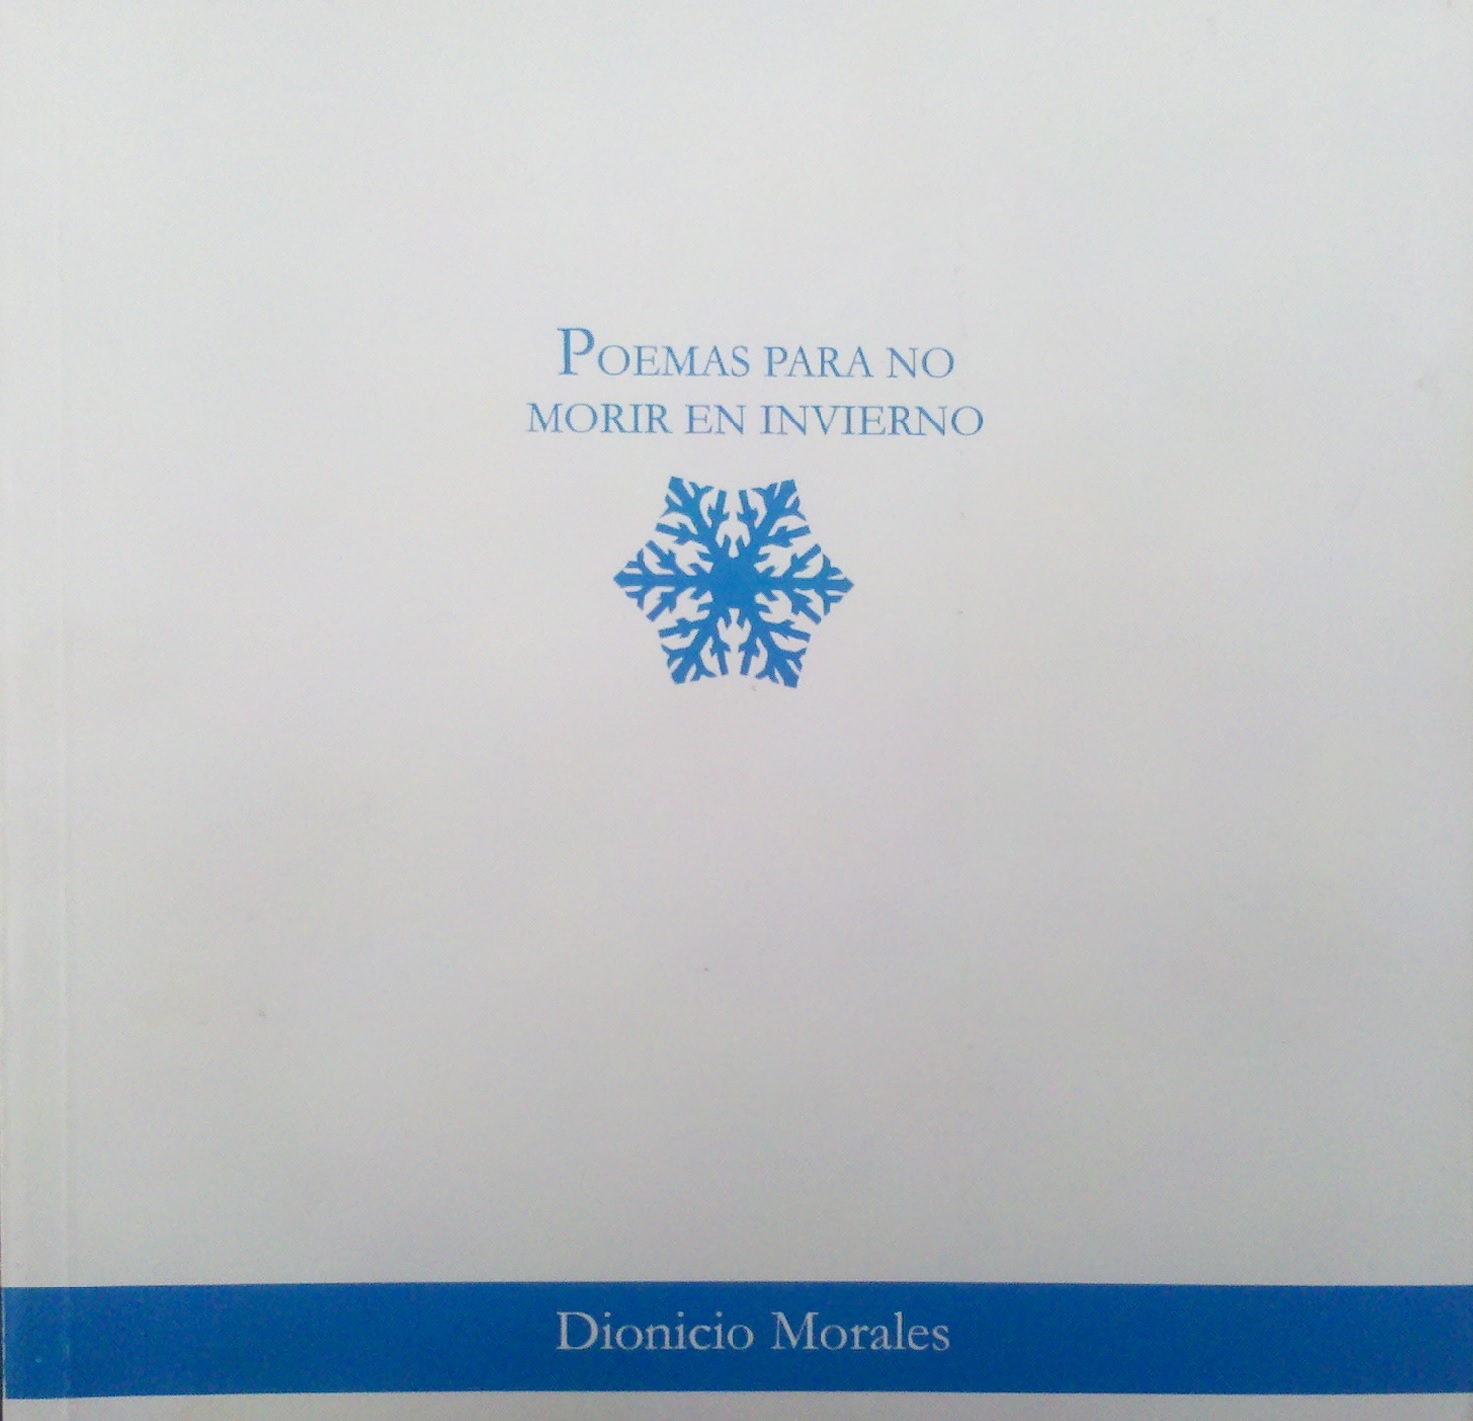 Poesía solidaria, poesía para no morir: a propósito de Poemas para no morir en invierno, de Dionicio Morales*